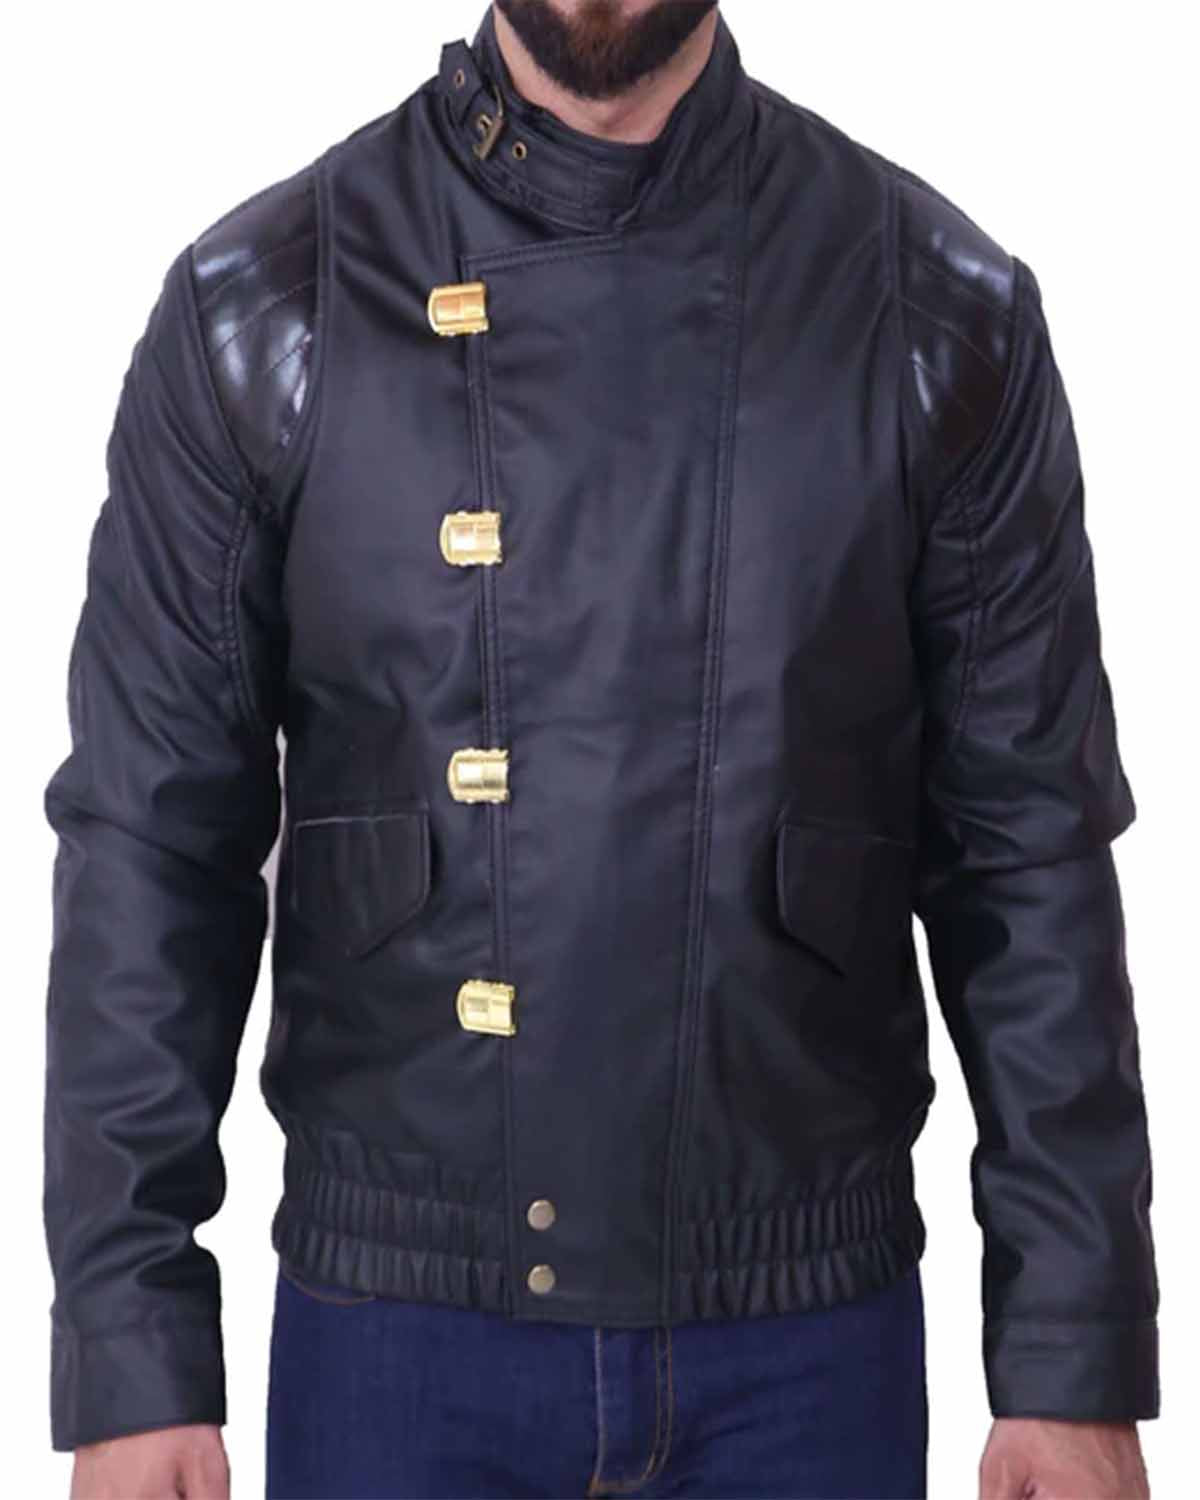 Elite Akira Kaneda Black Leather Jacket